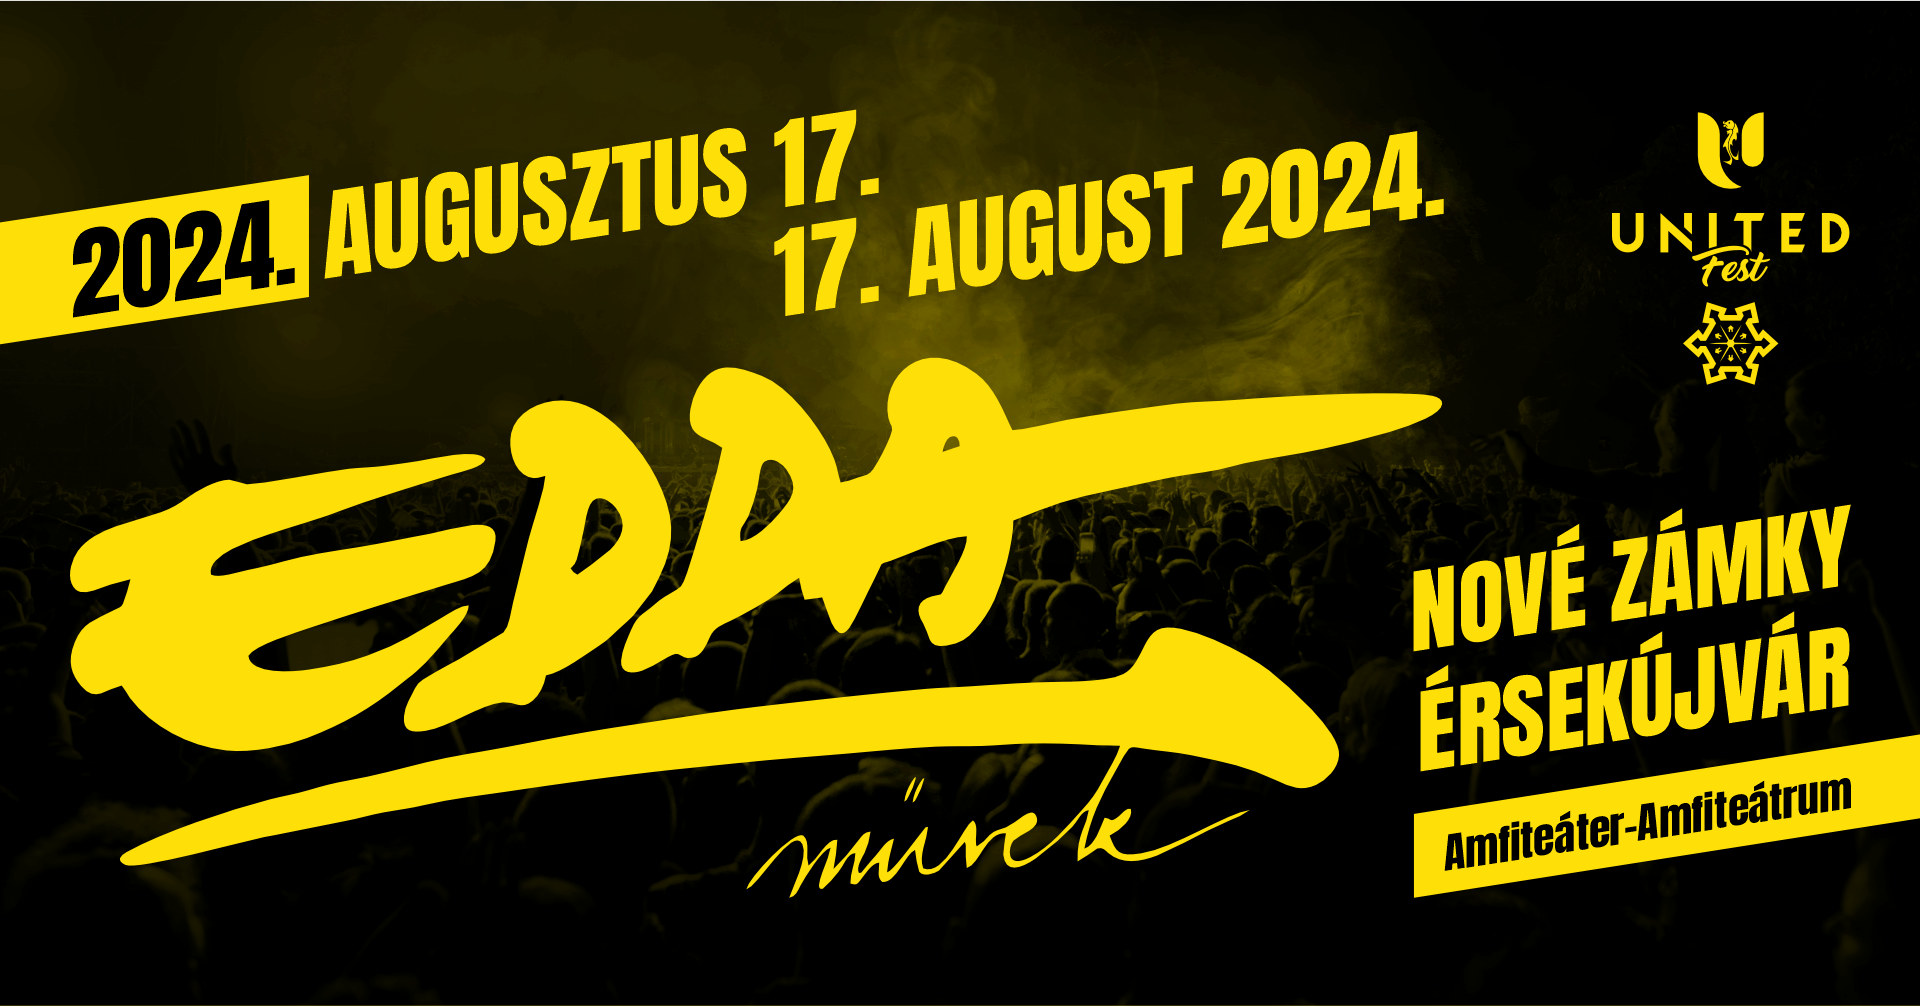 edda_NZ_event_2024 (1)